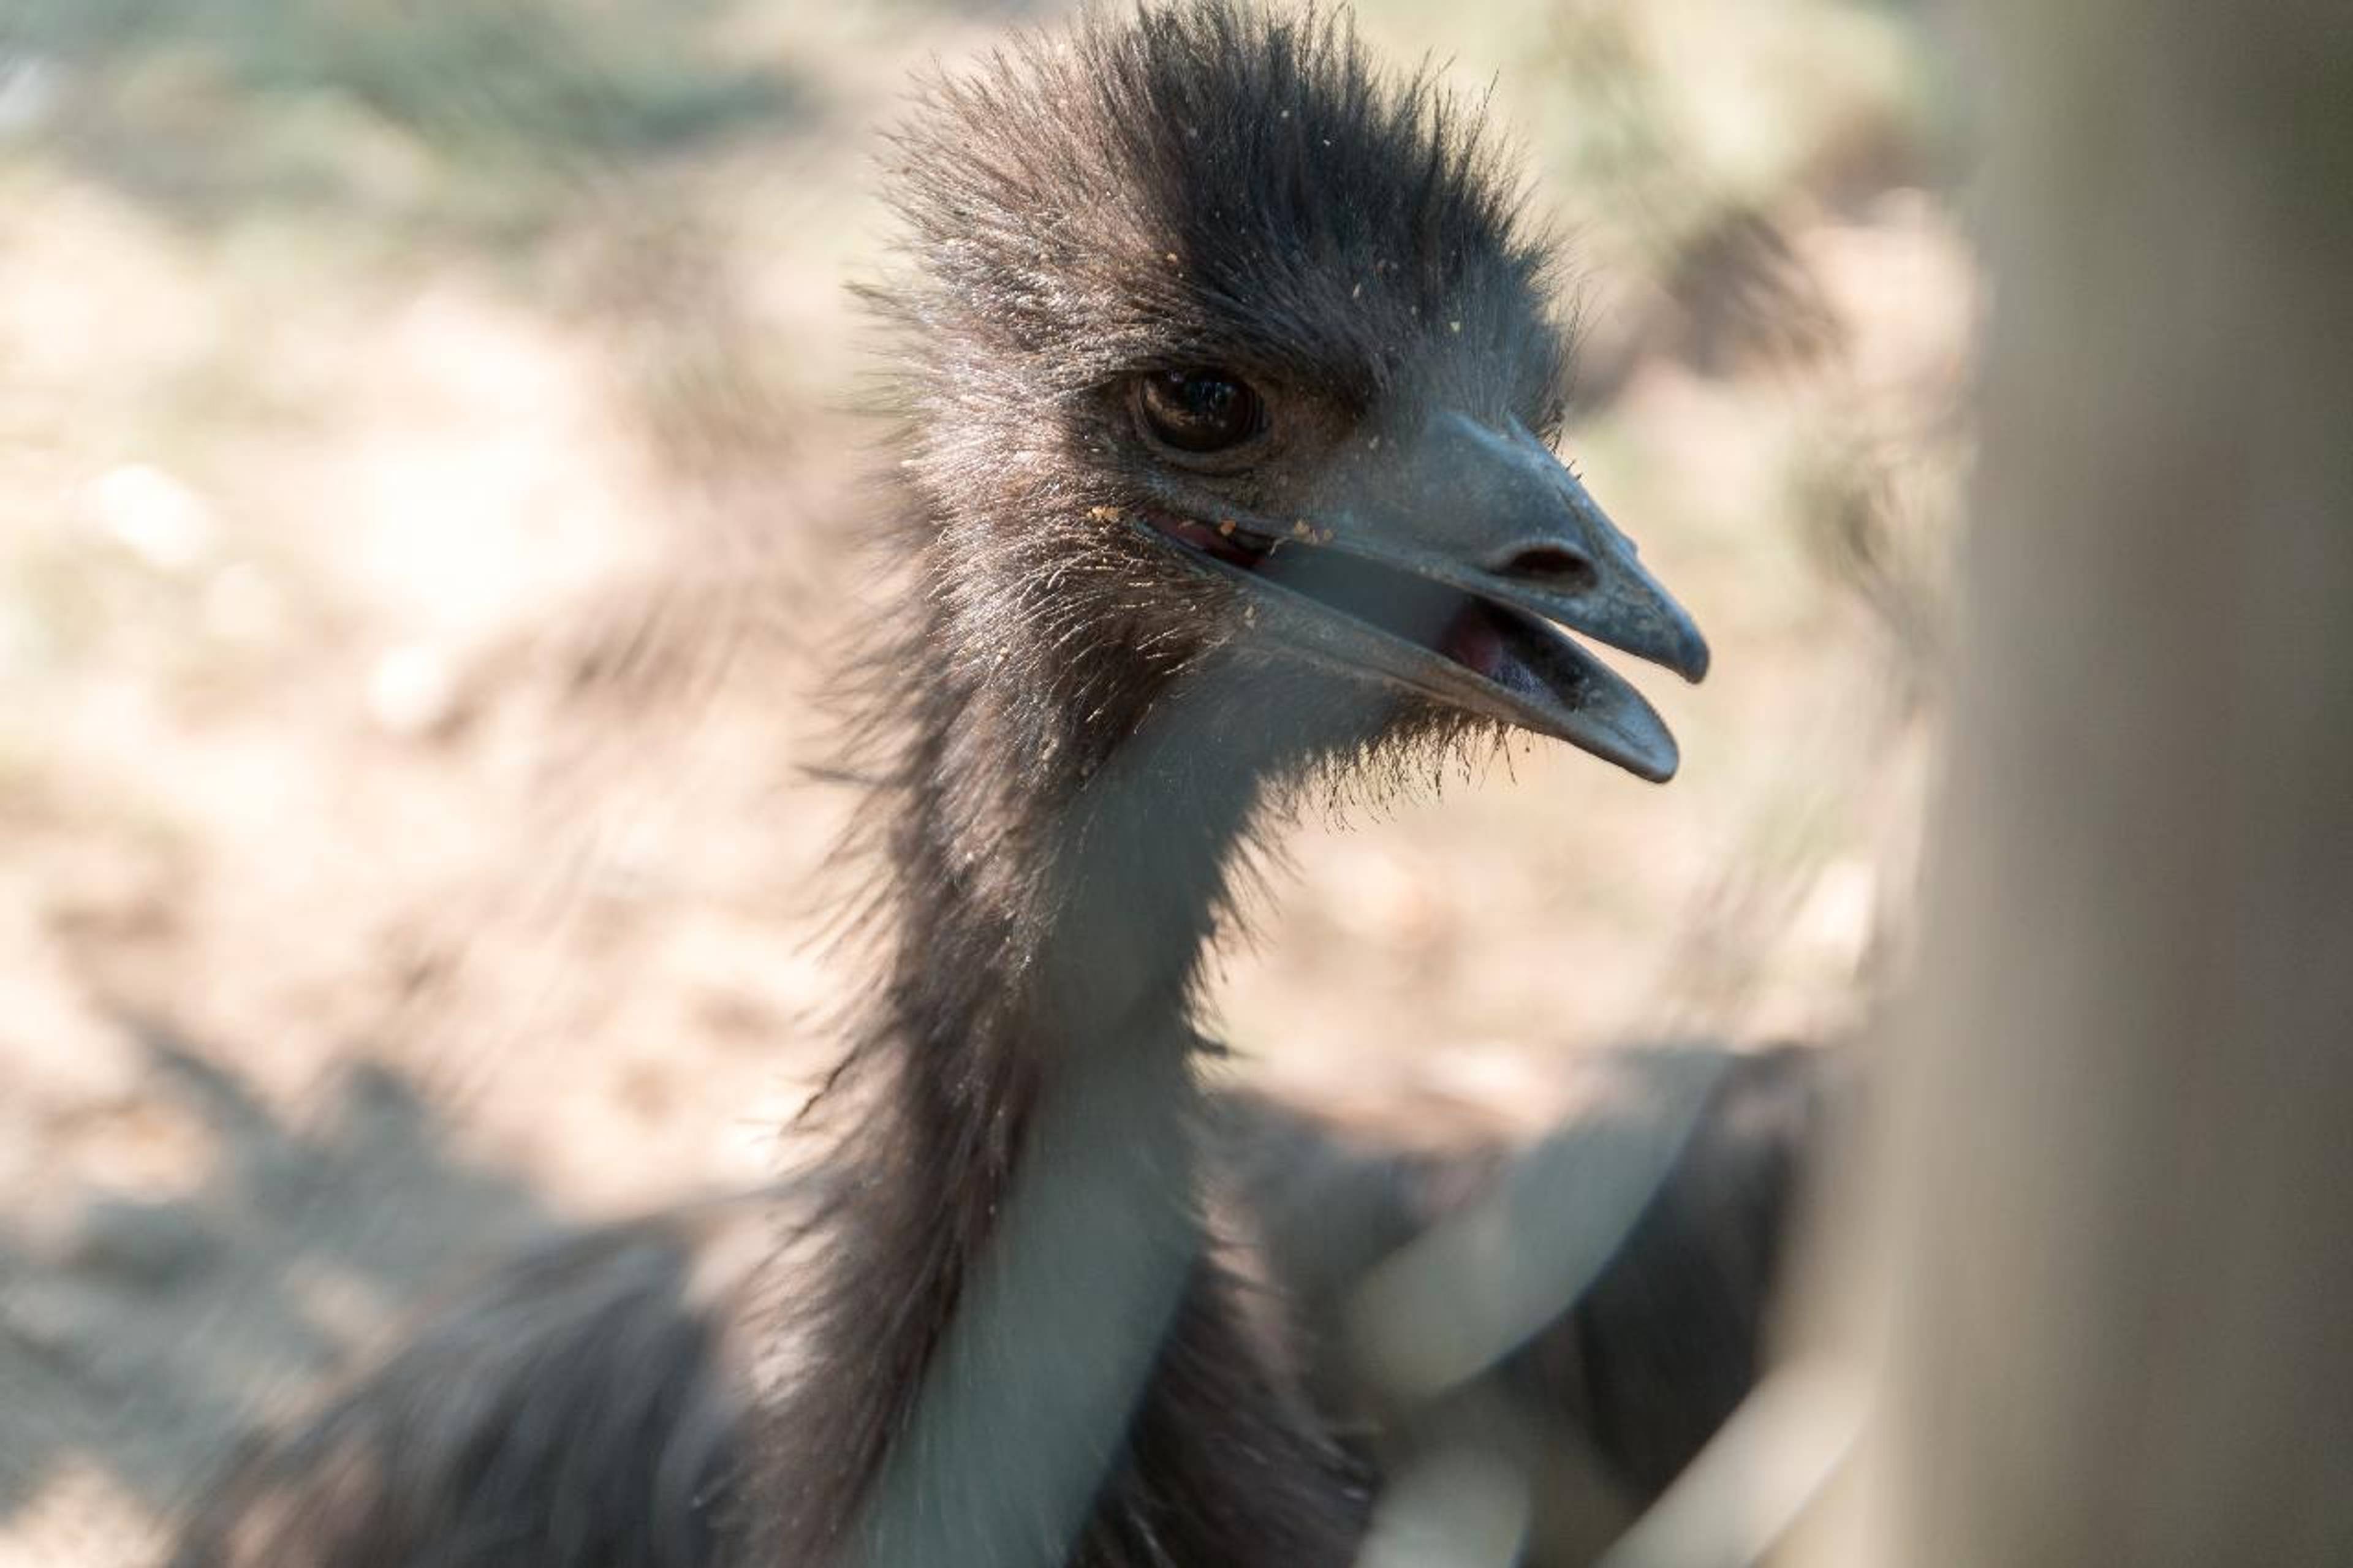 Australian ostriches and mischievous squirrels